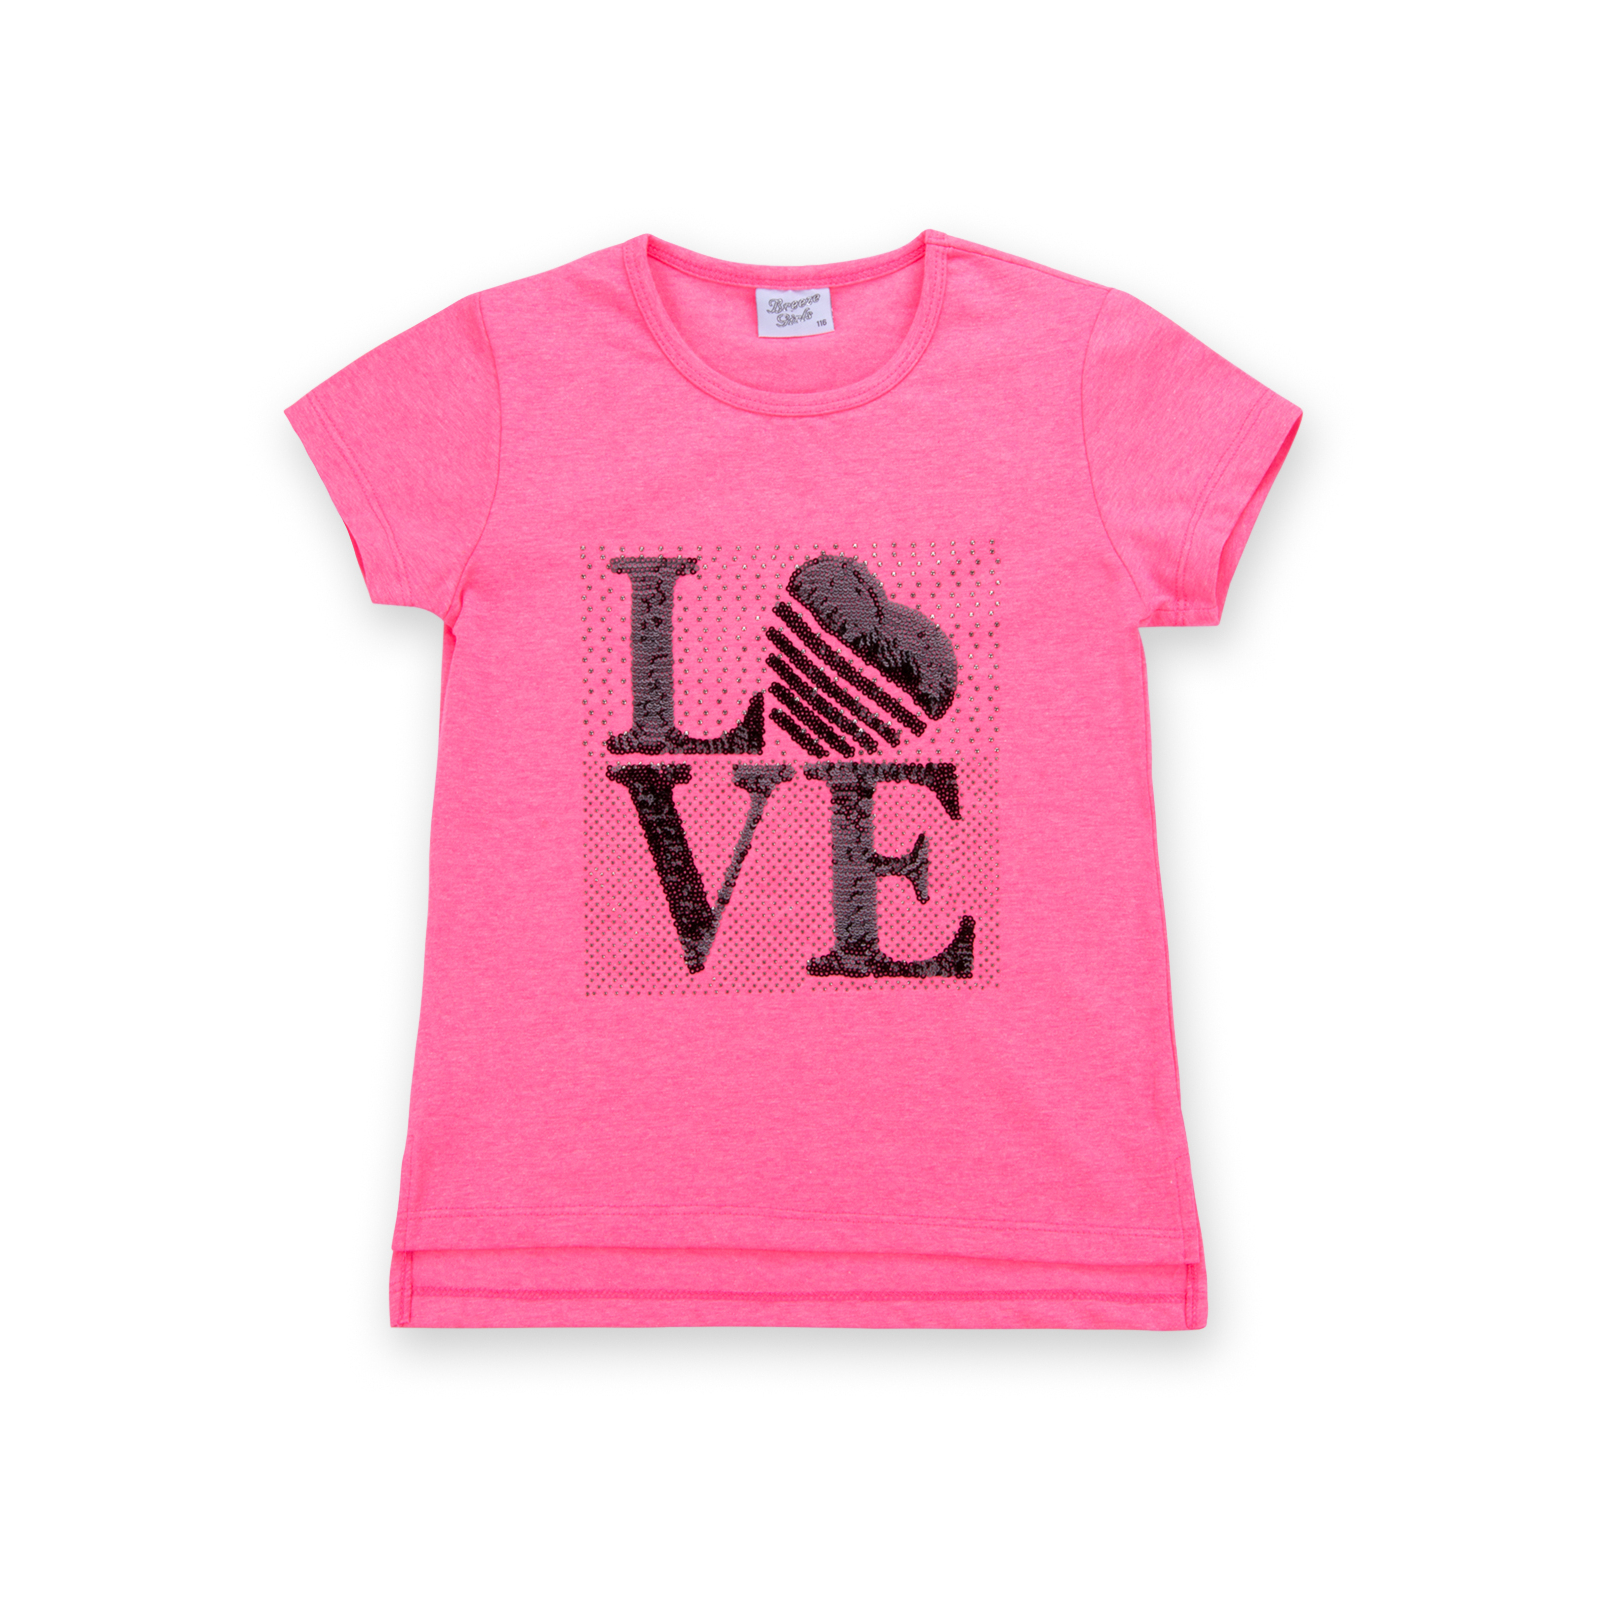 Набор детской одежды Breeze с надписью "LOVE" из пайеток (8307-152G-pink) изображение 2